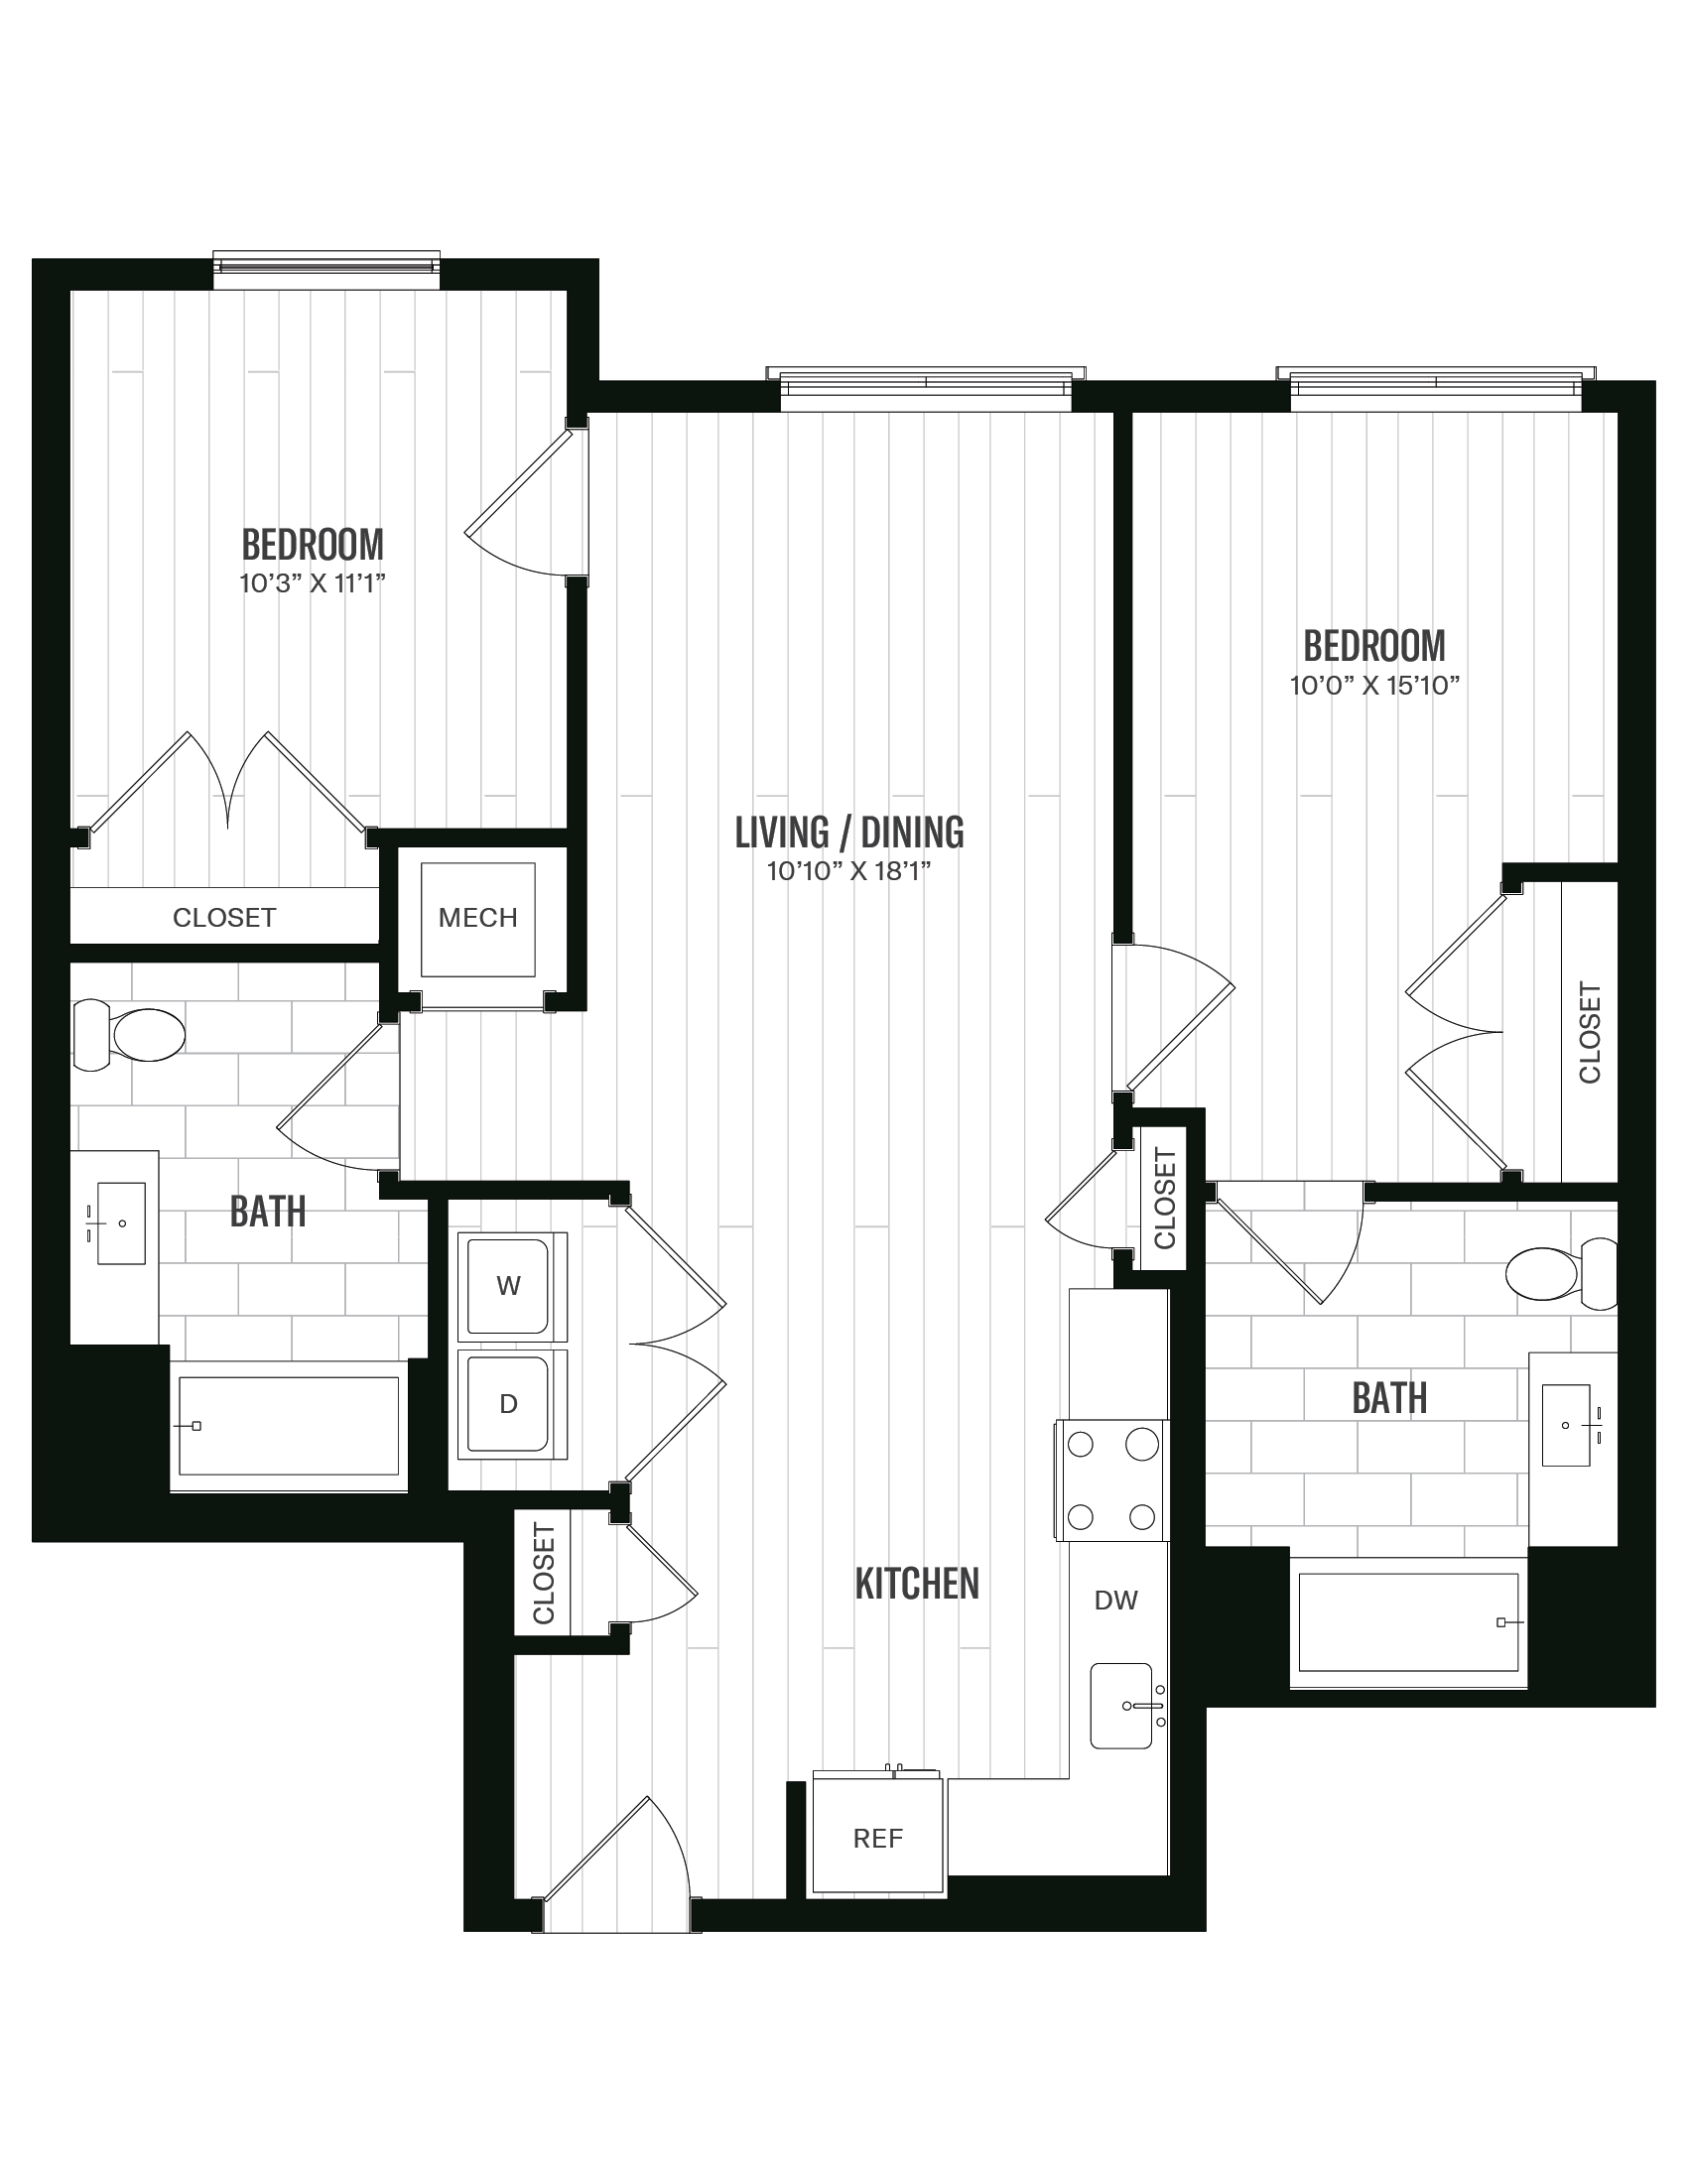 Floorplan image of unit 565